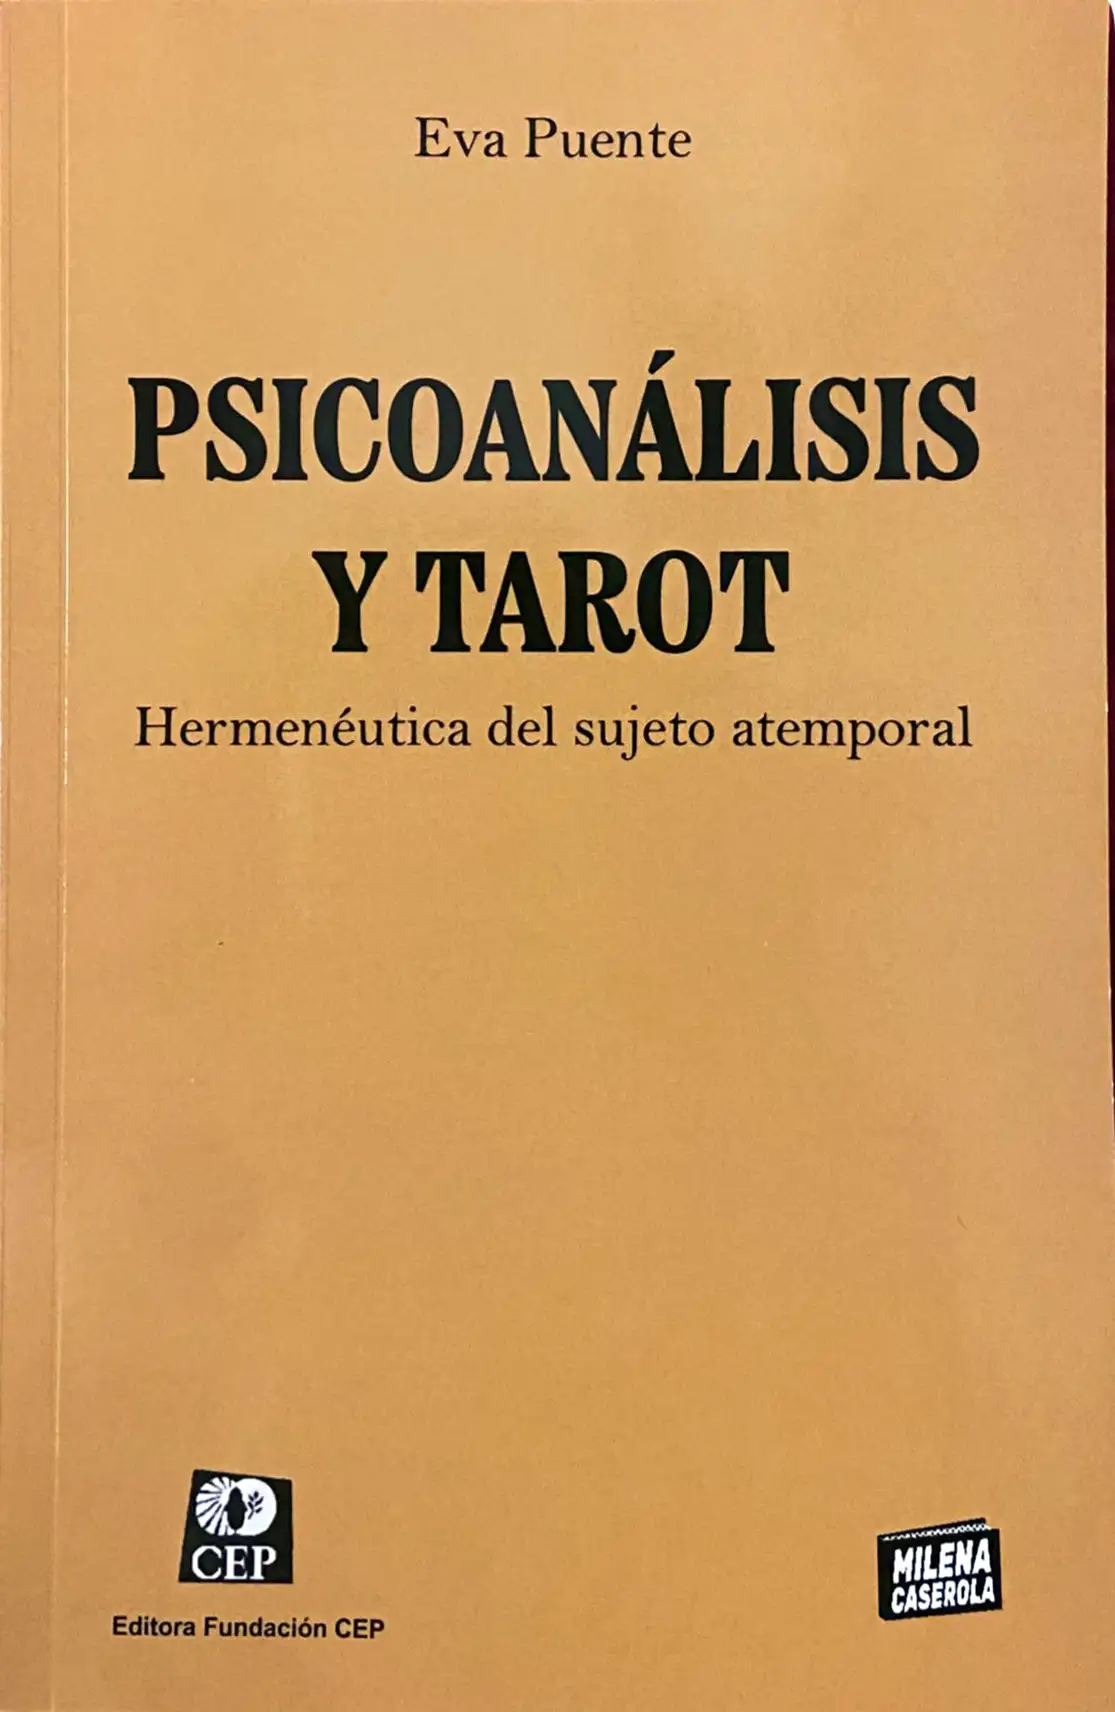 Psicoanálisis y Tarot. Hermenéutica del sujeto atemporal. Dra. Eva Puente